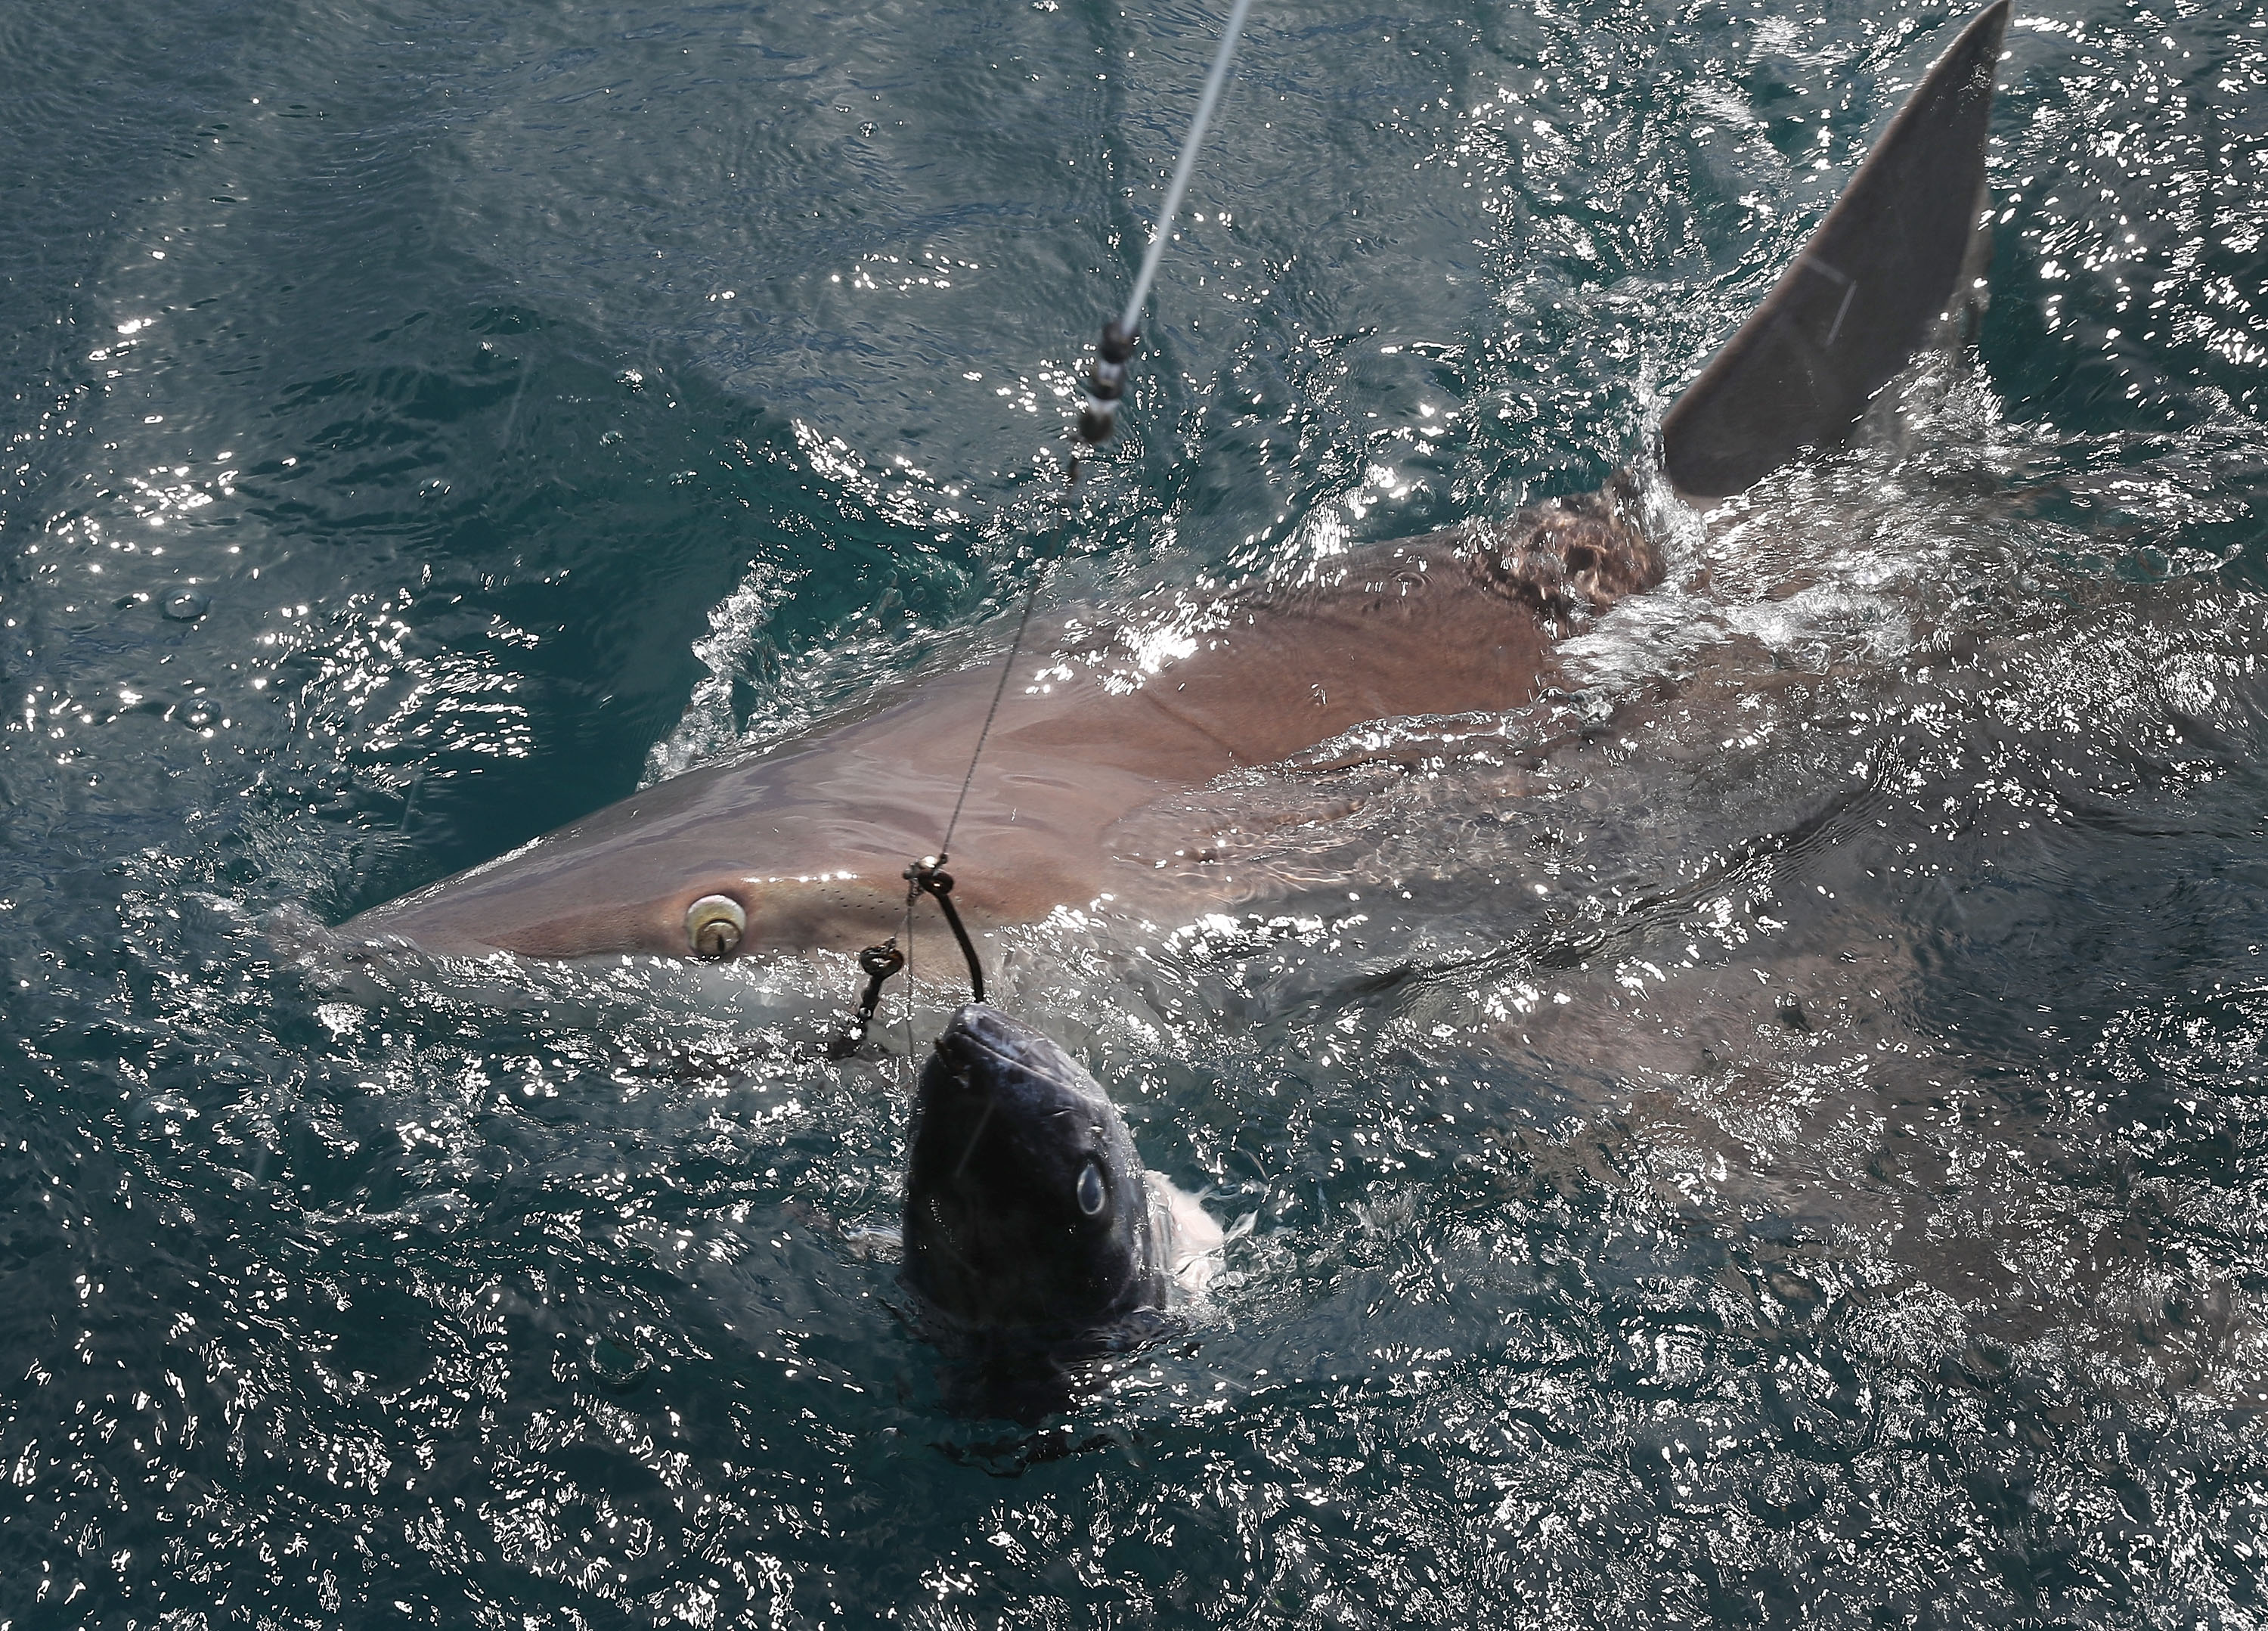 През август 2016 г. изследователи изчислиха, че женска акула, уловена край Гренландия, която живяла в плен в продължение на 5 години, е умряла на 392 години. Това я прави най-възрастното известно гръбначно животно.